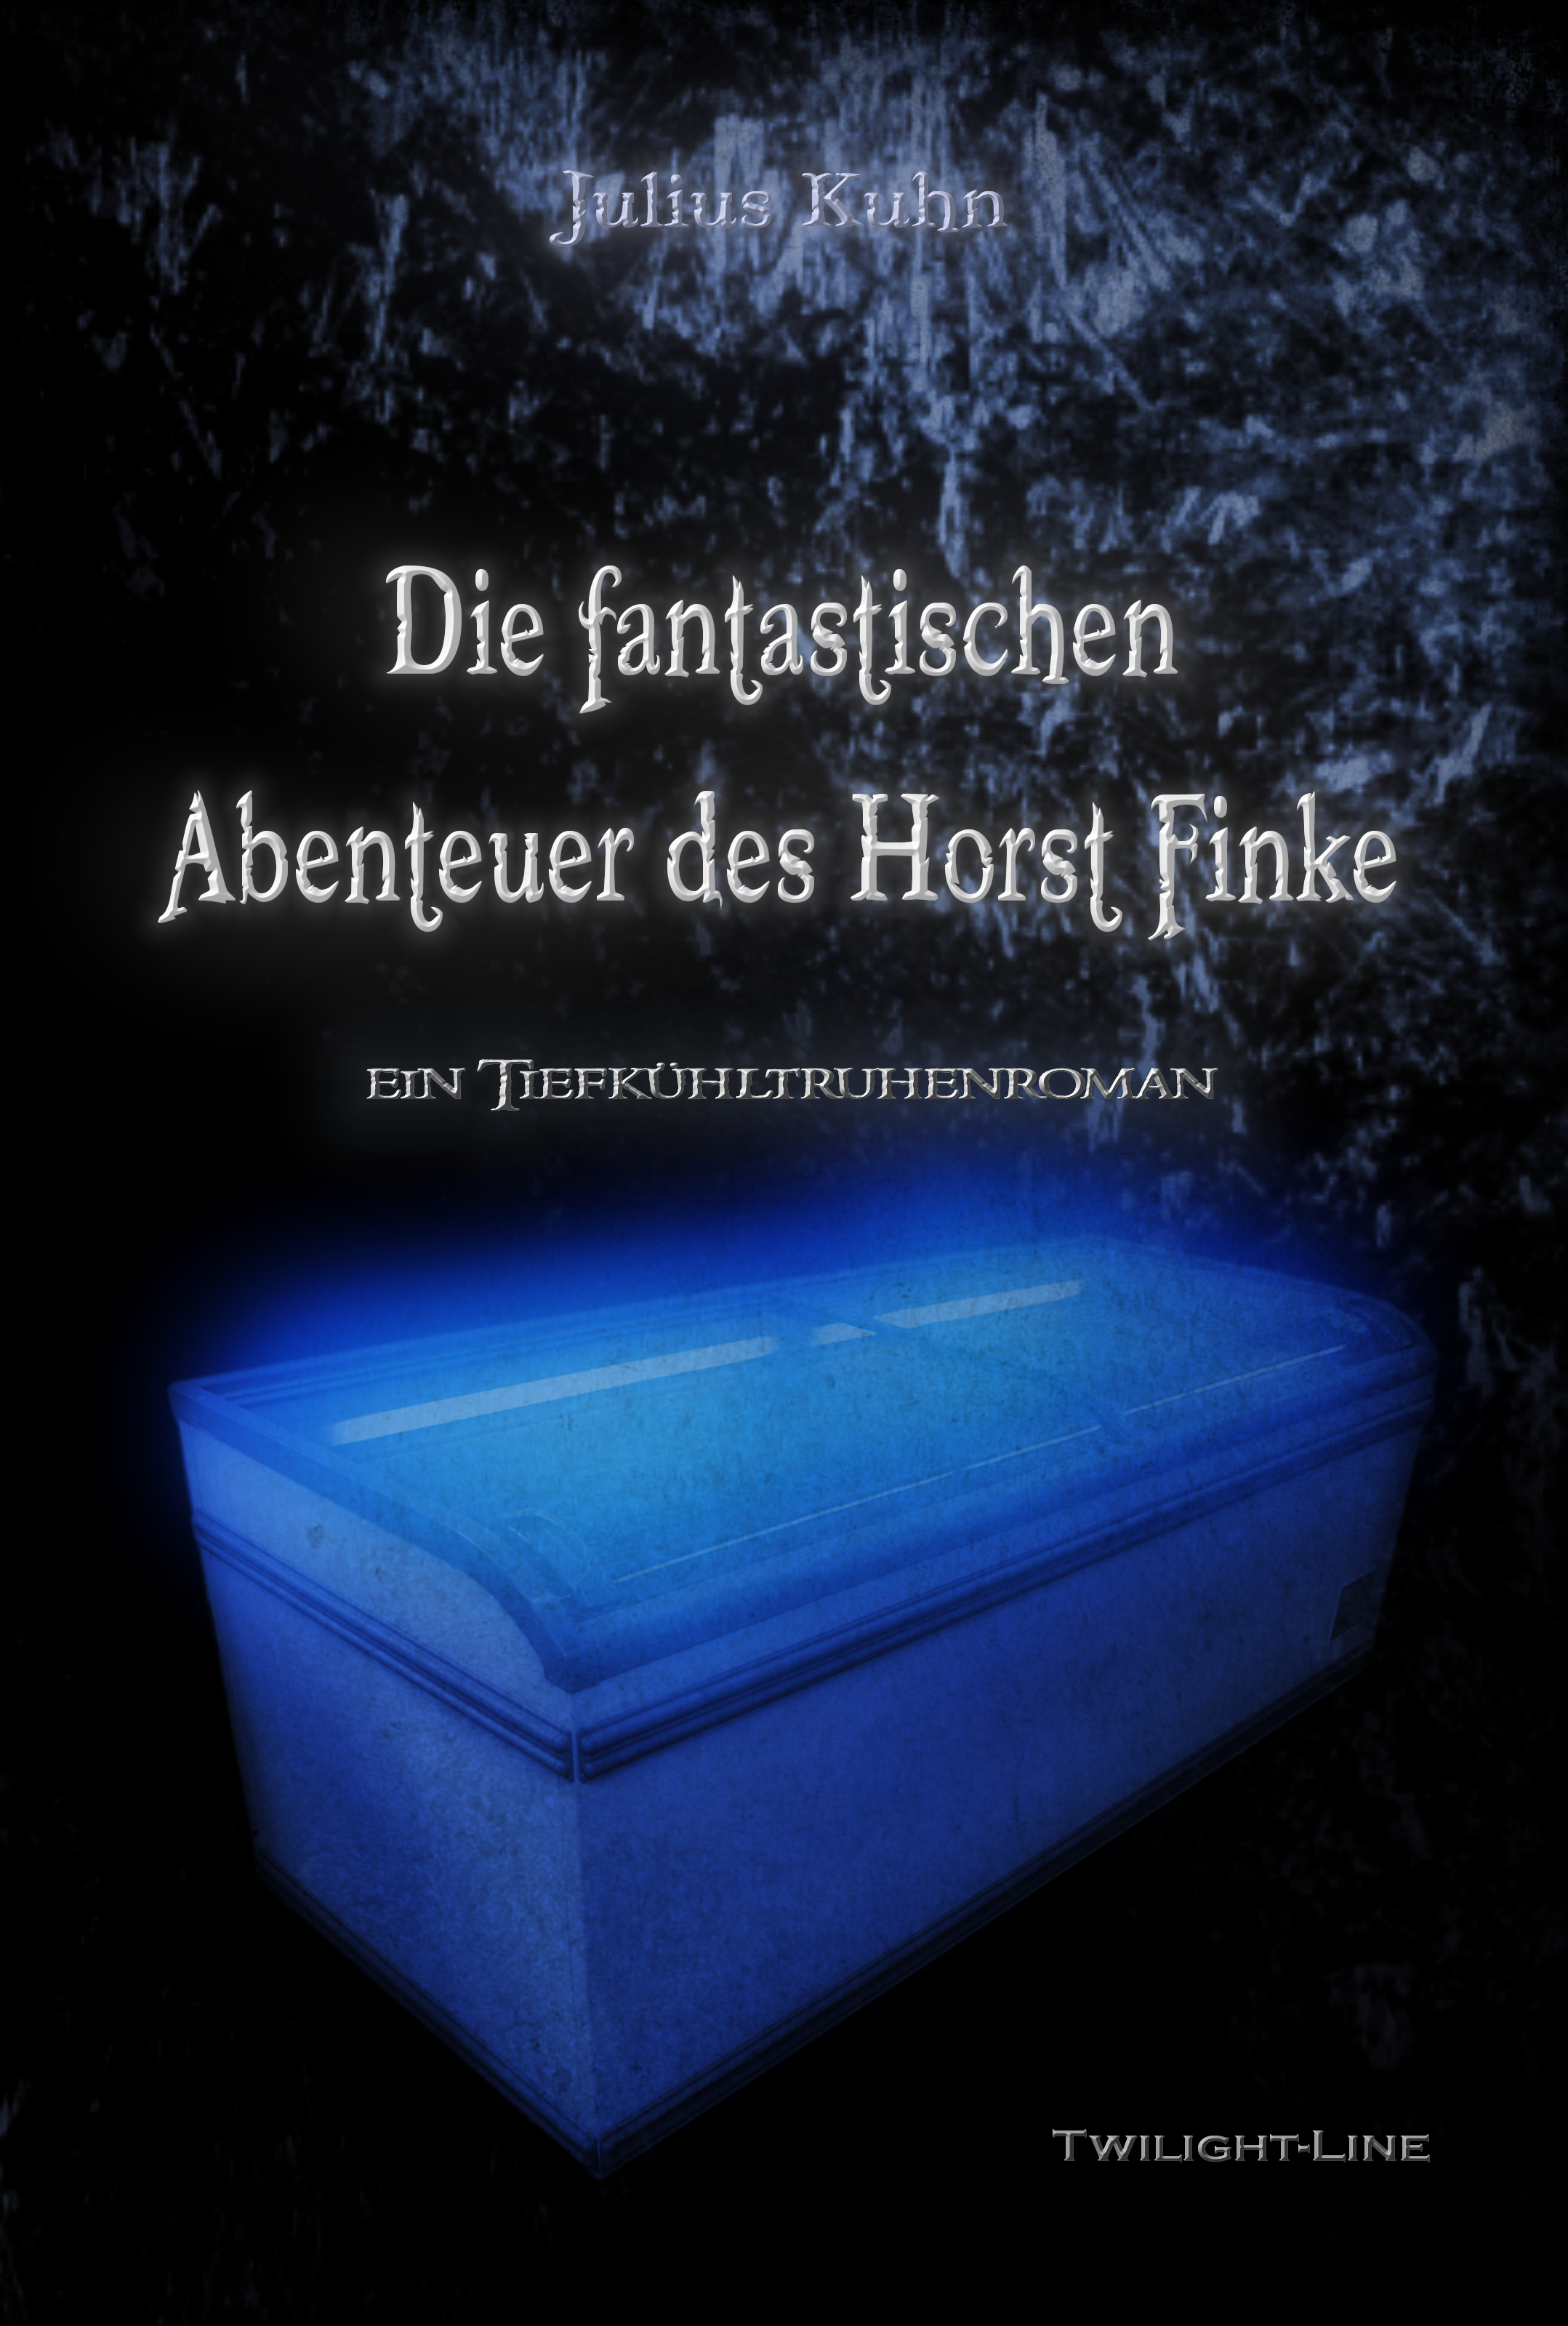 Die fantastischen Abenteuer des Horst Finke